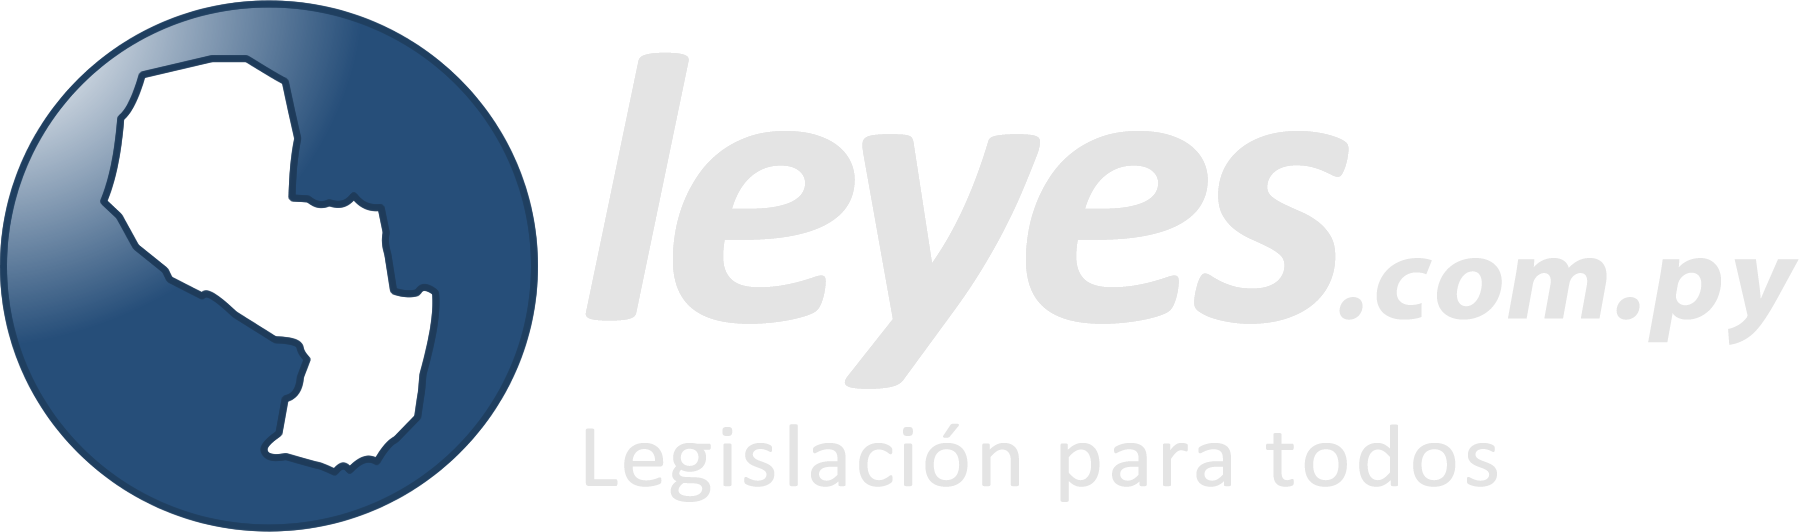 Logo de leyes.com.py